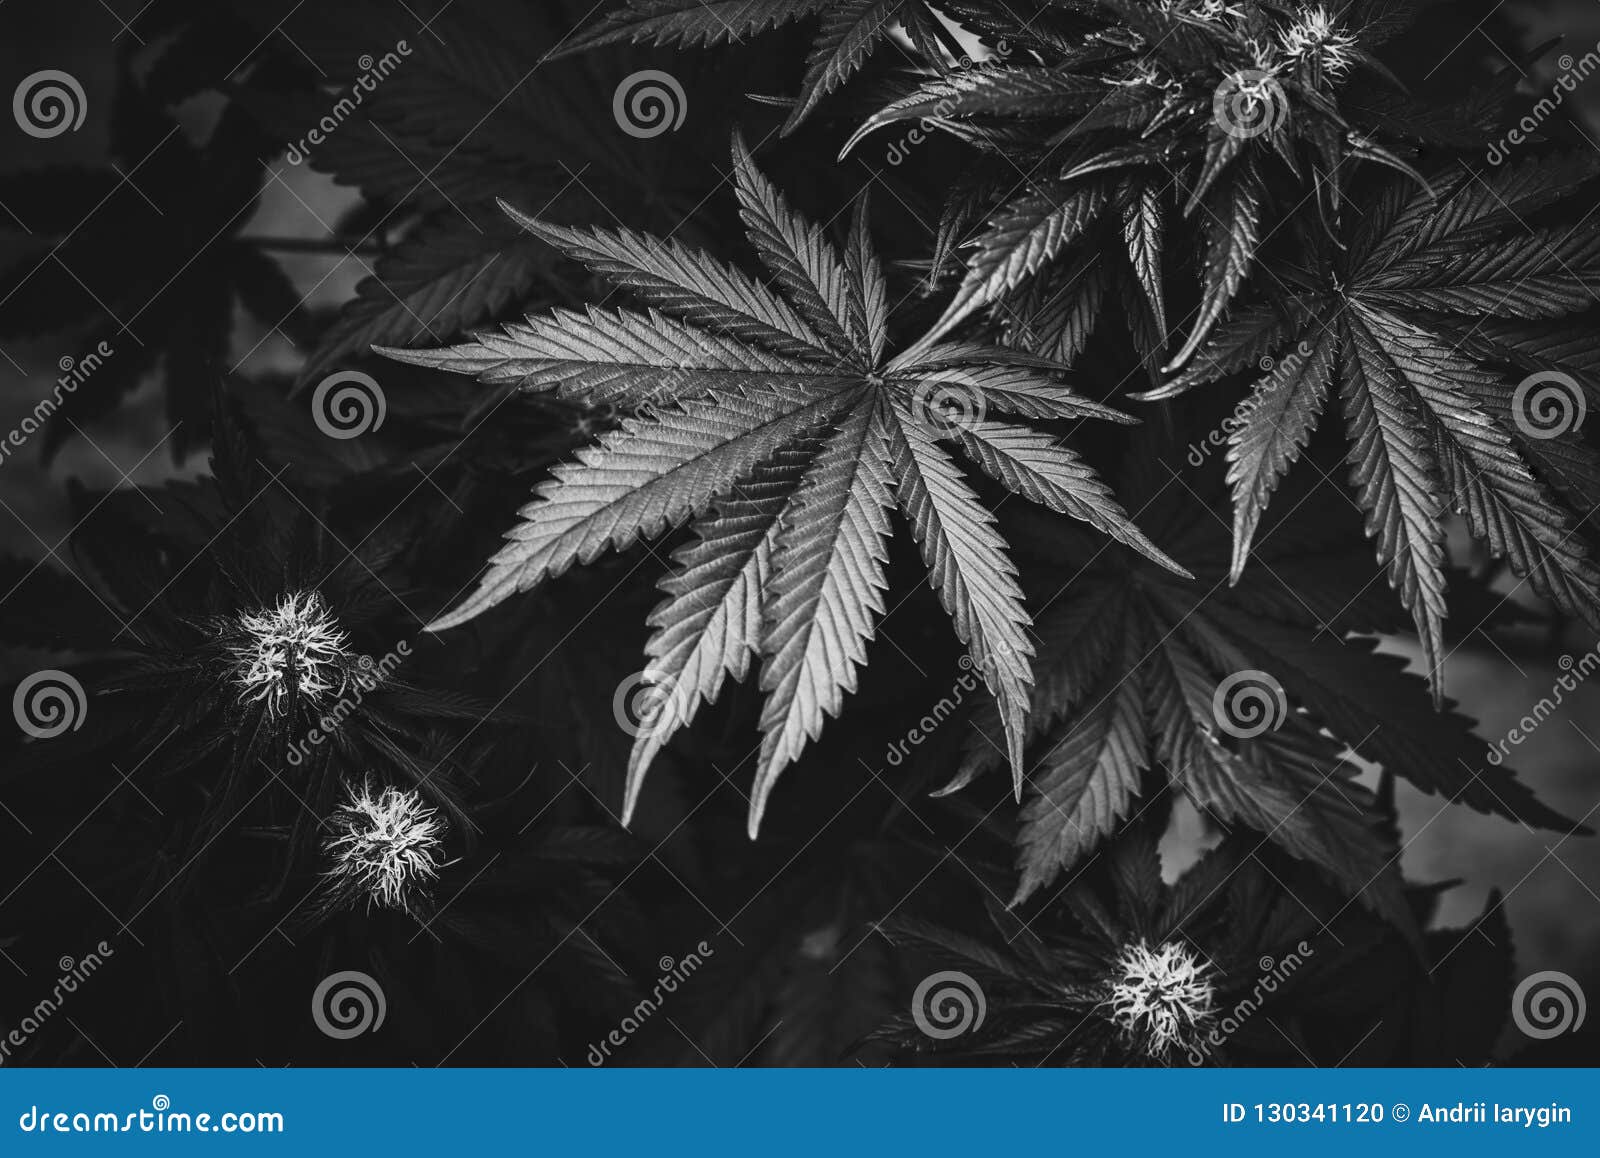 Черно белые фото конопли комедии марихуану